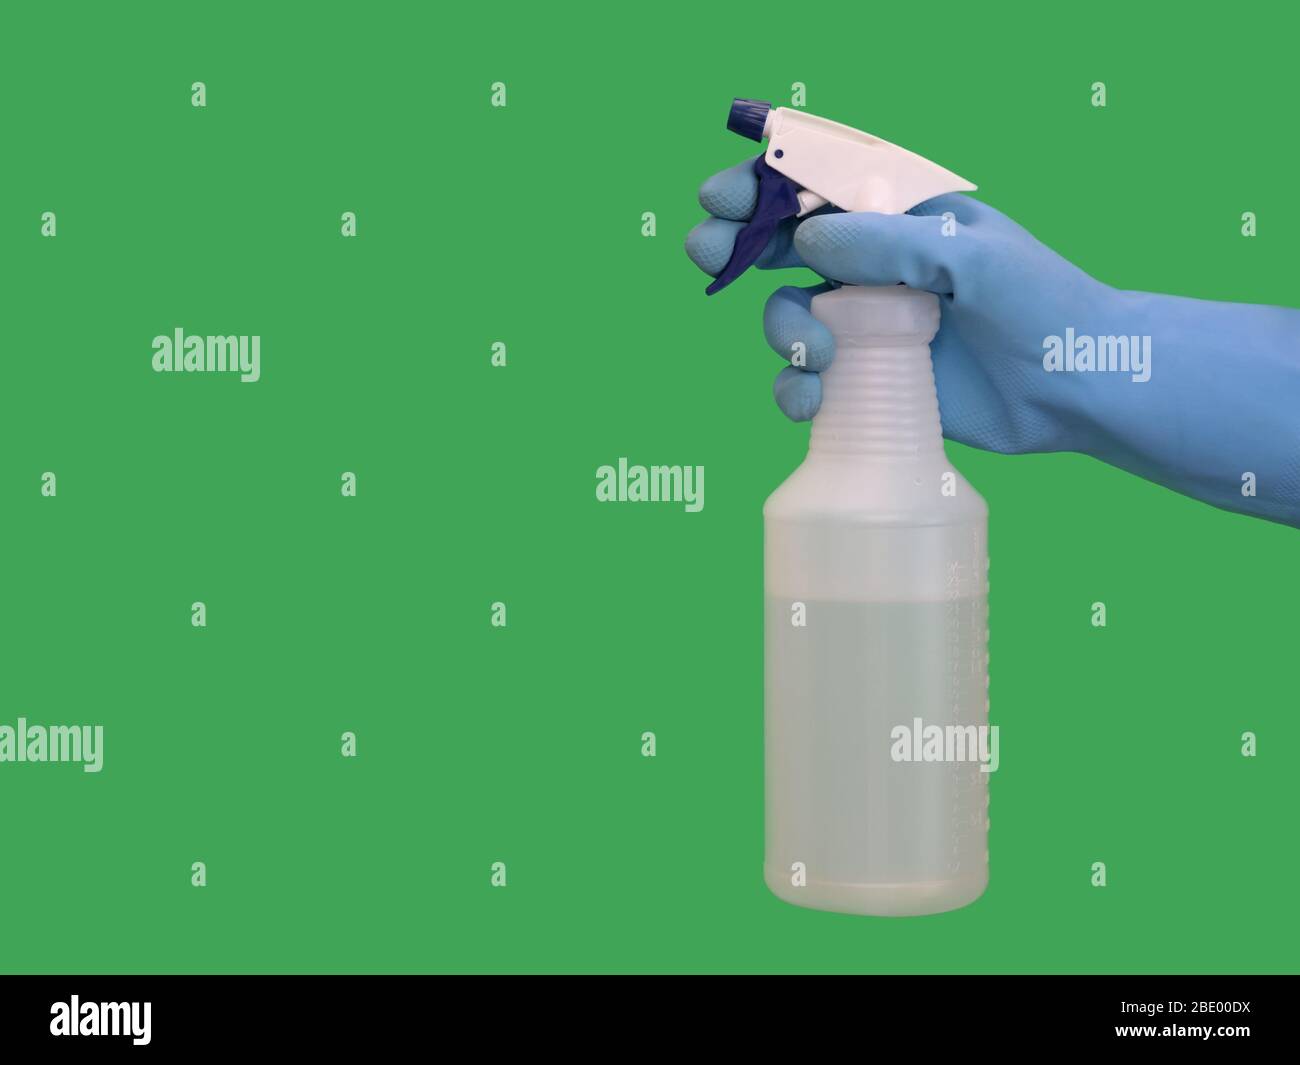 Eine Hand mit einem blauen Gummihandschuh hält eine Plastikflasche, die von einer Seite mit Reinigungslösung gefüllt ist, gegen eine feste grüne Oberfläche. Stockfoto